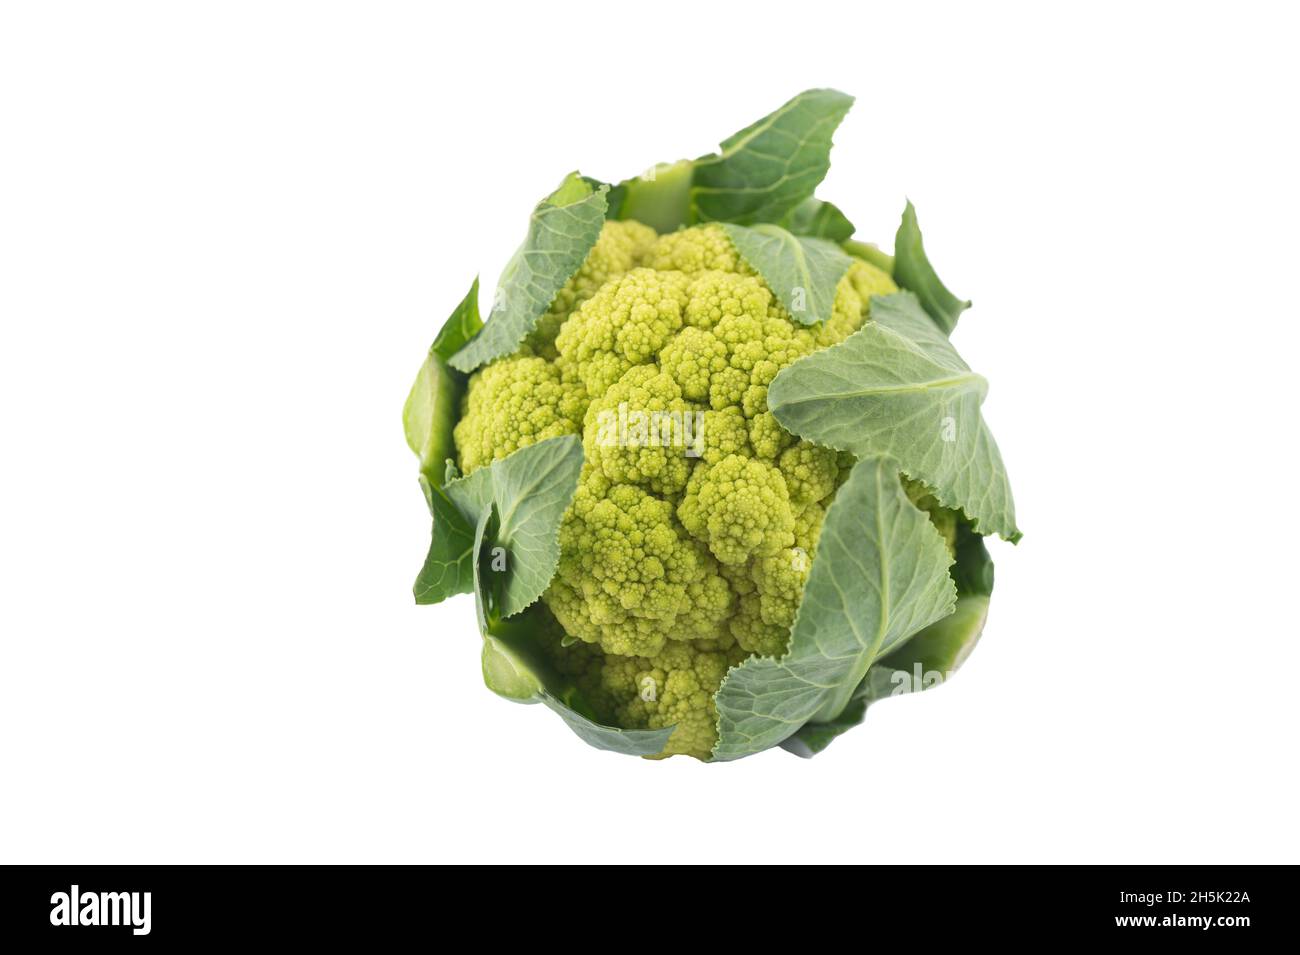 Green organic fresh cauliflower. Stock Photo